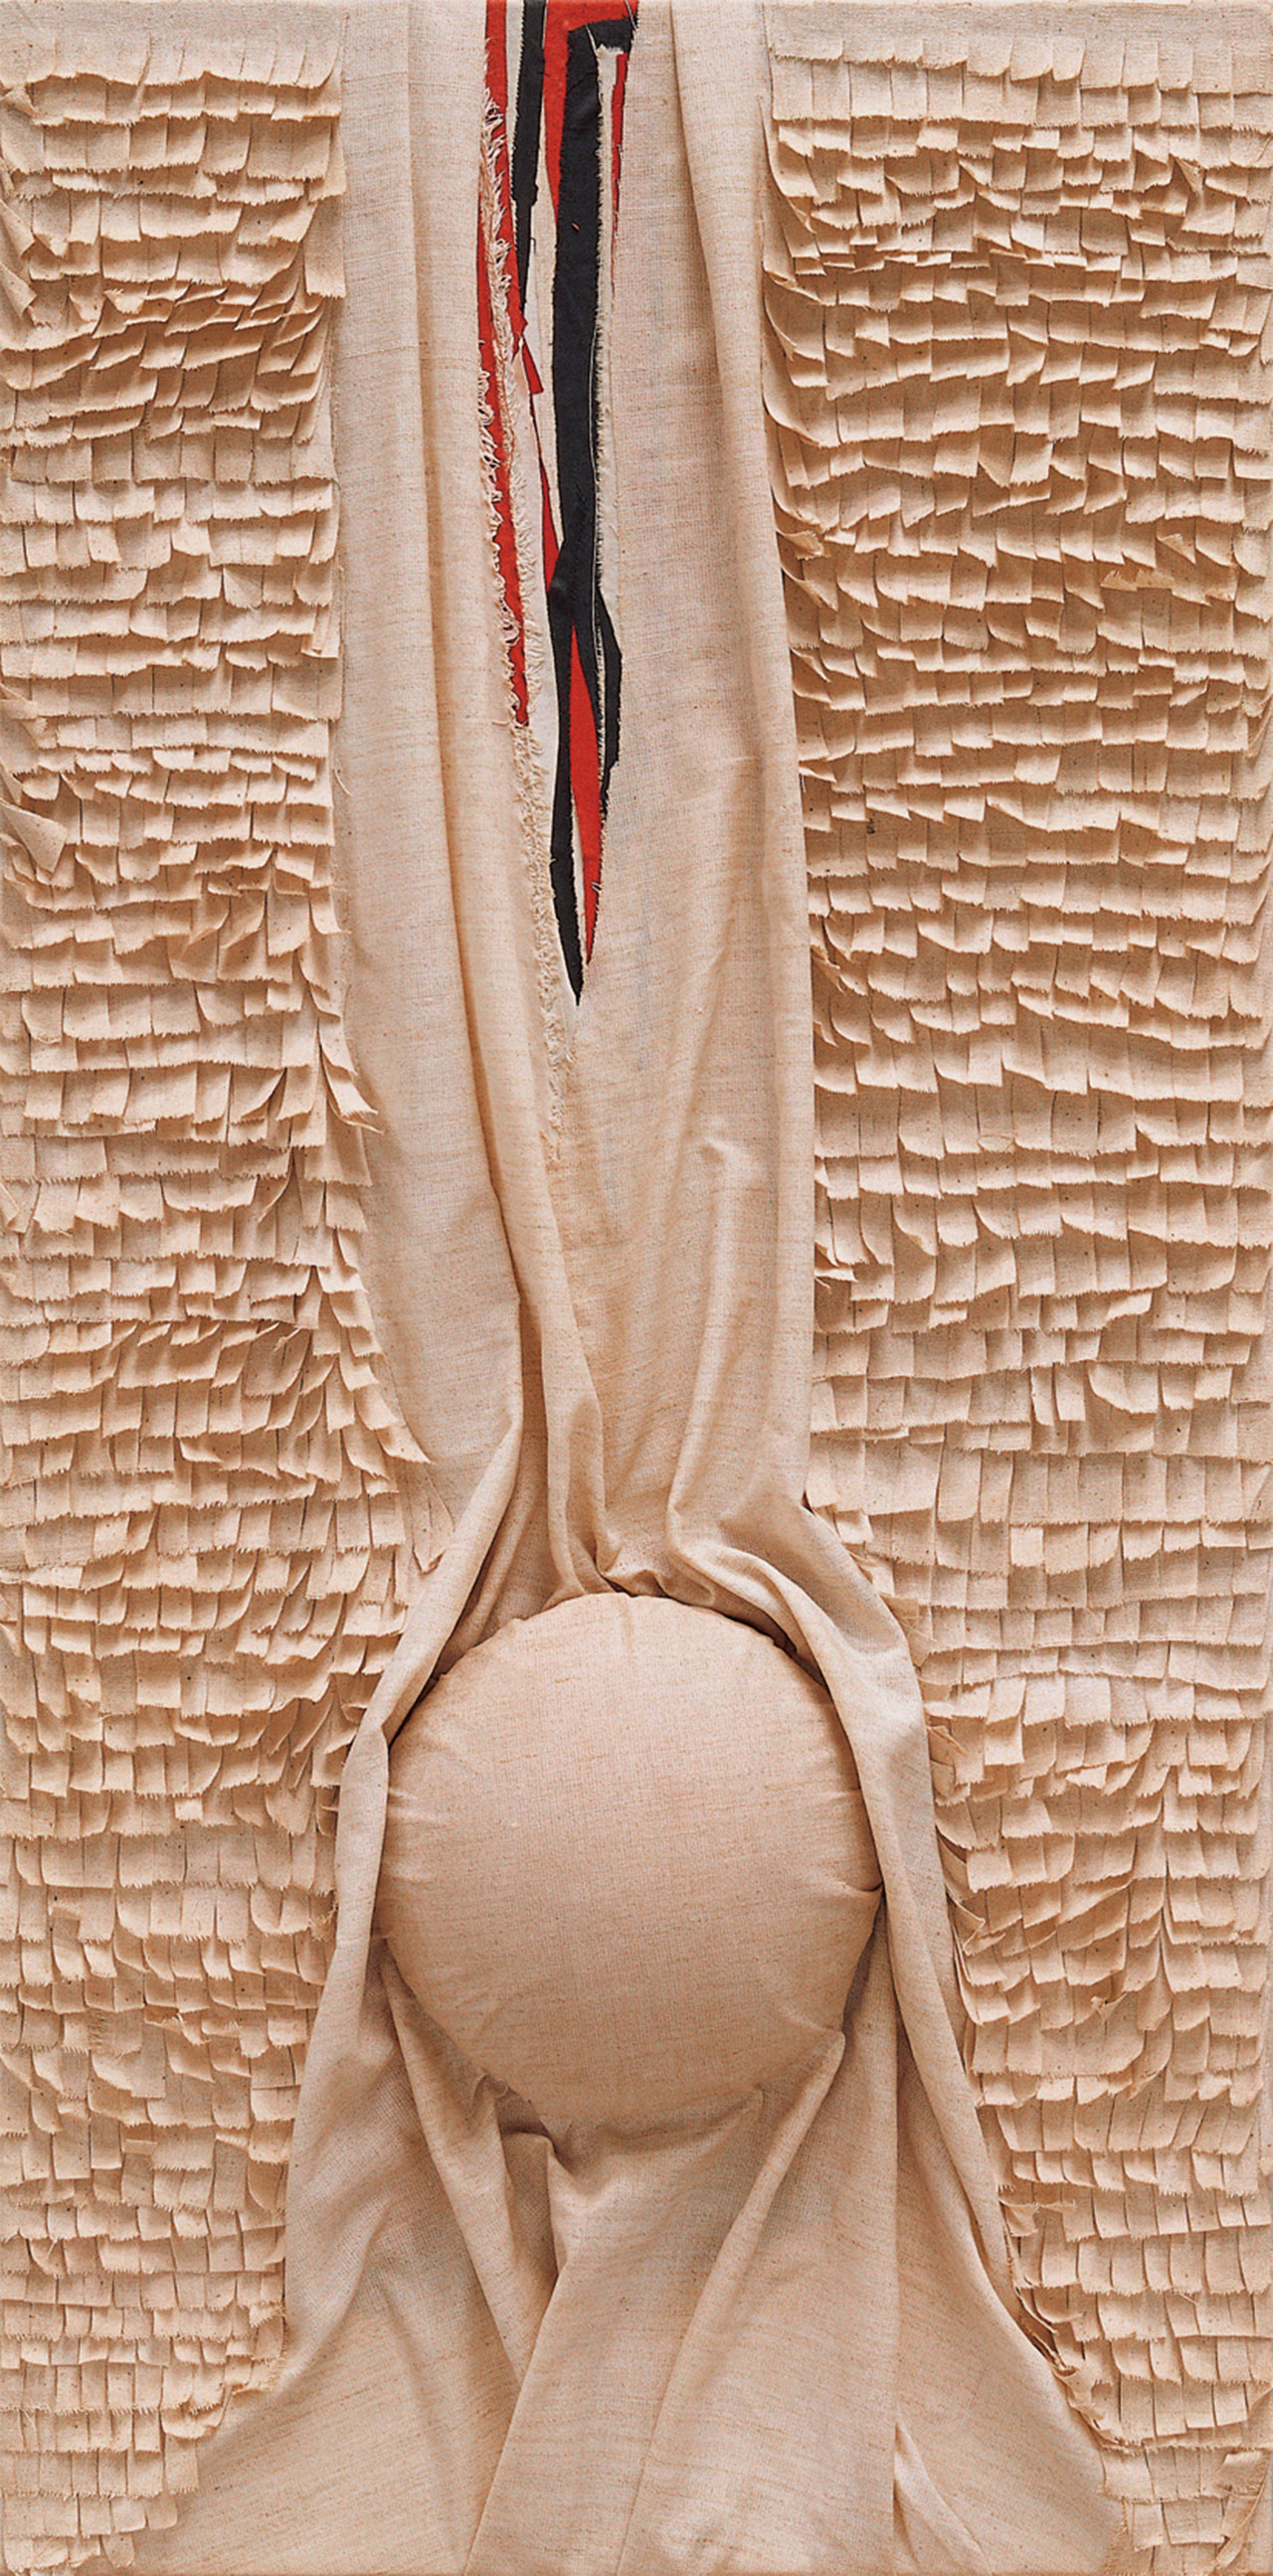 Eminence Cotton, linen, resine 55.5x133cm